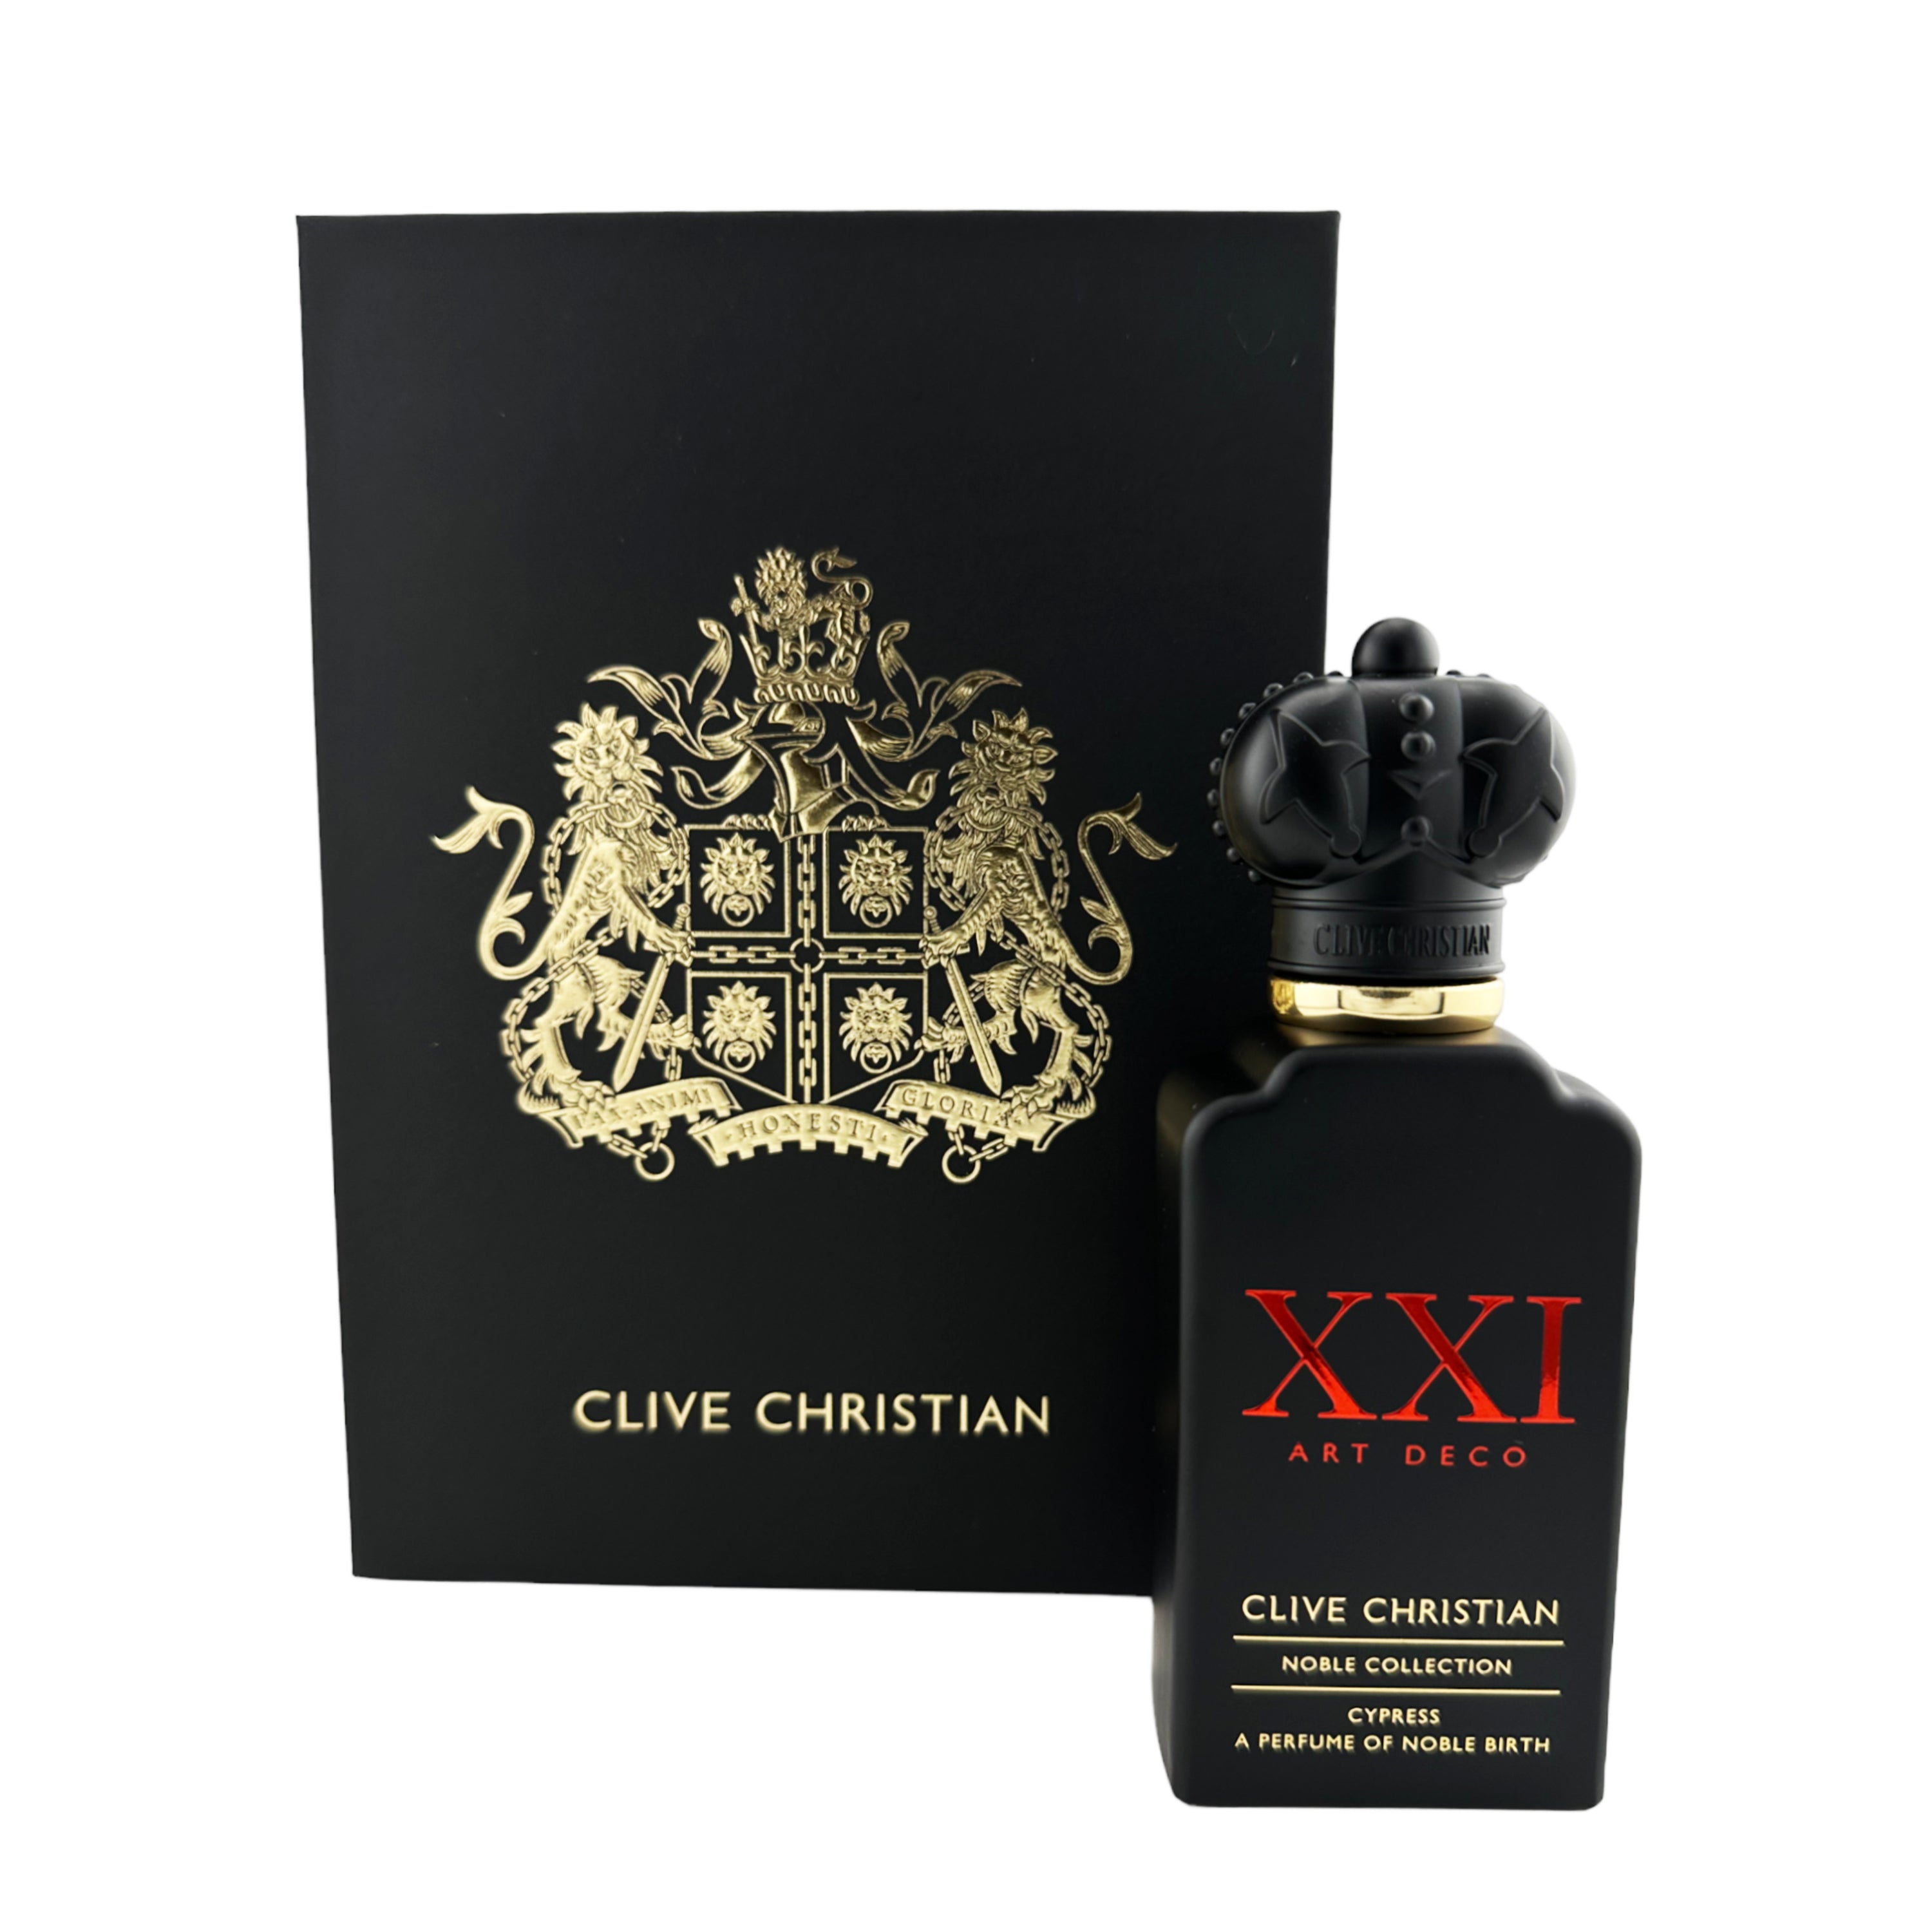 Clive Christian XXI Art Deco Noble Collection Cypress Eau de Parfum for Unisex